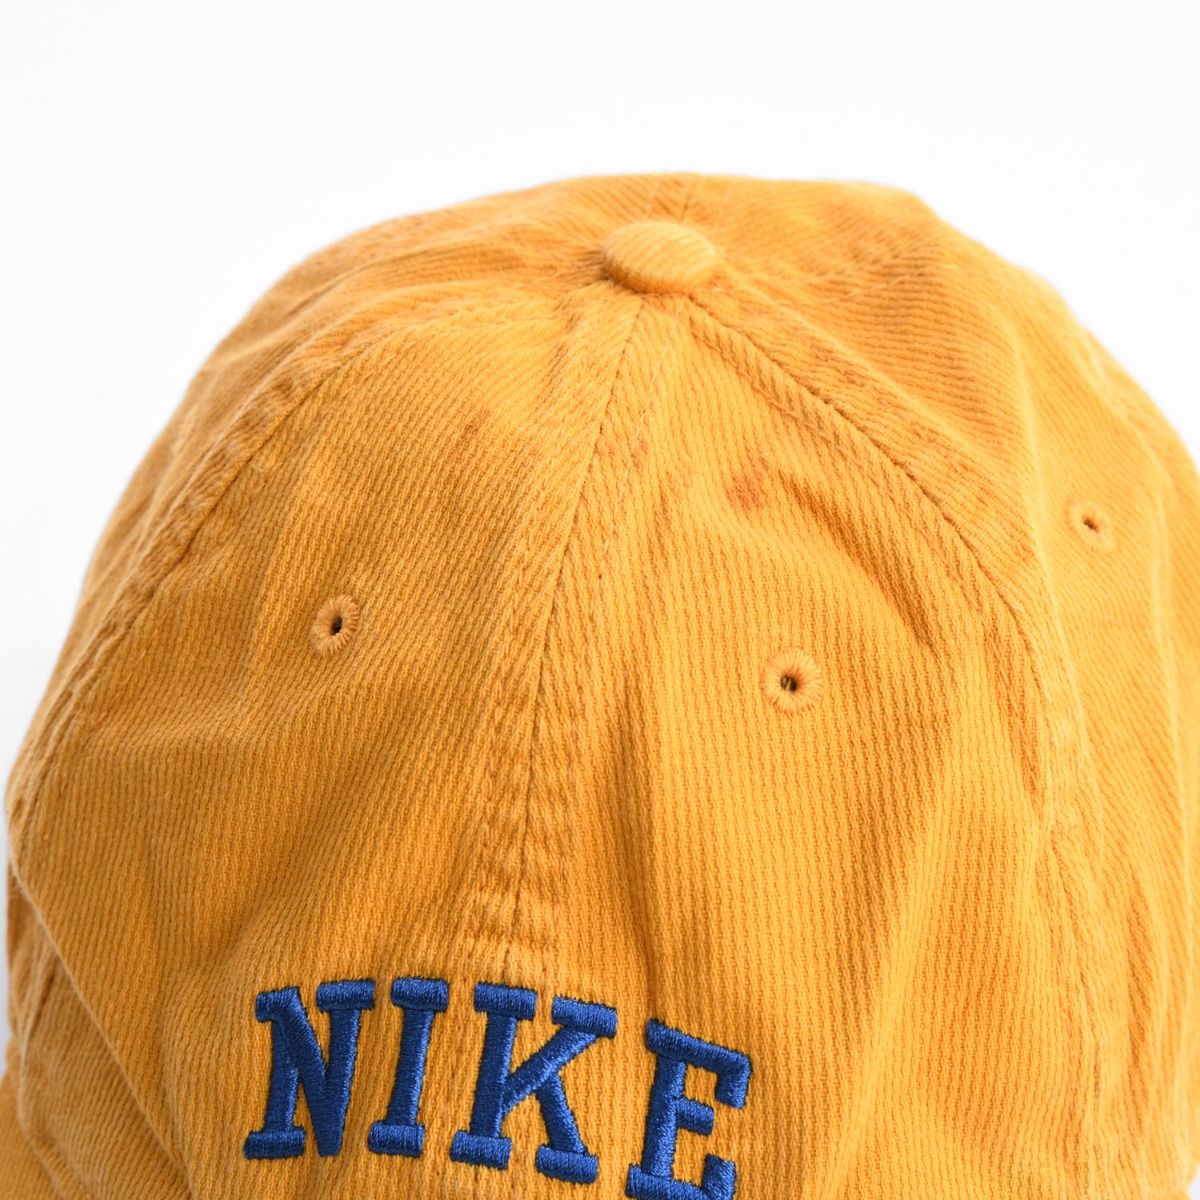 Nike Early 2000s Baseball Cap